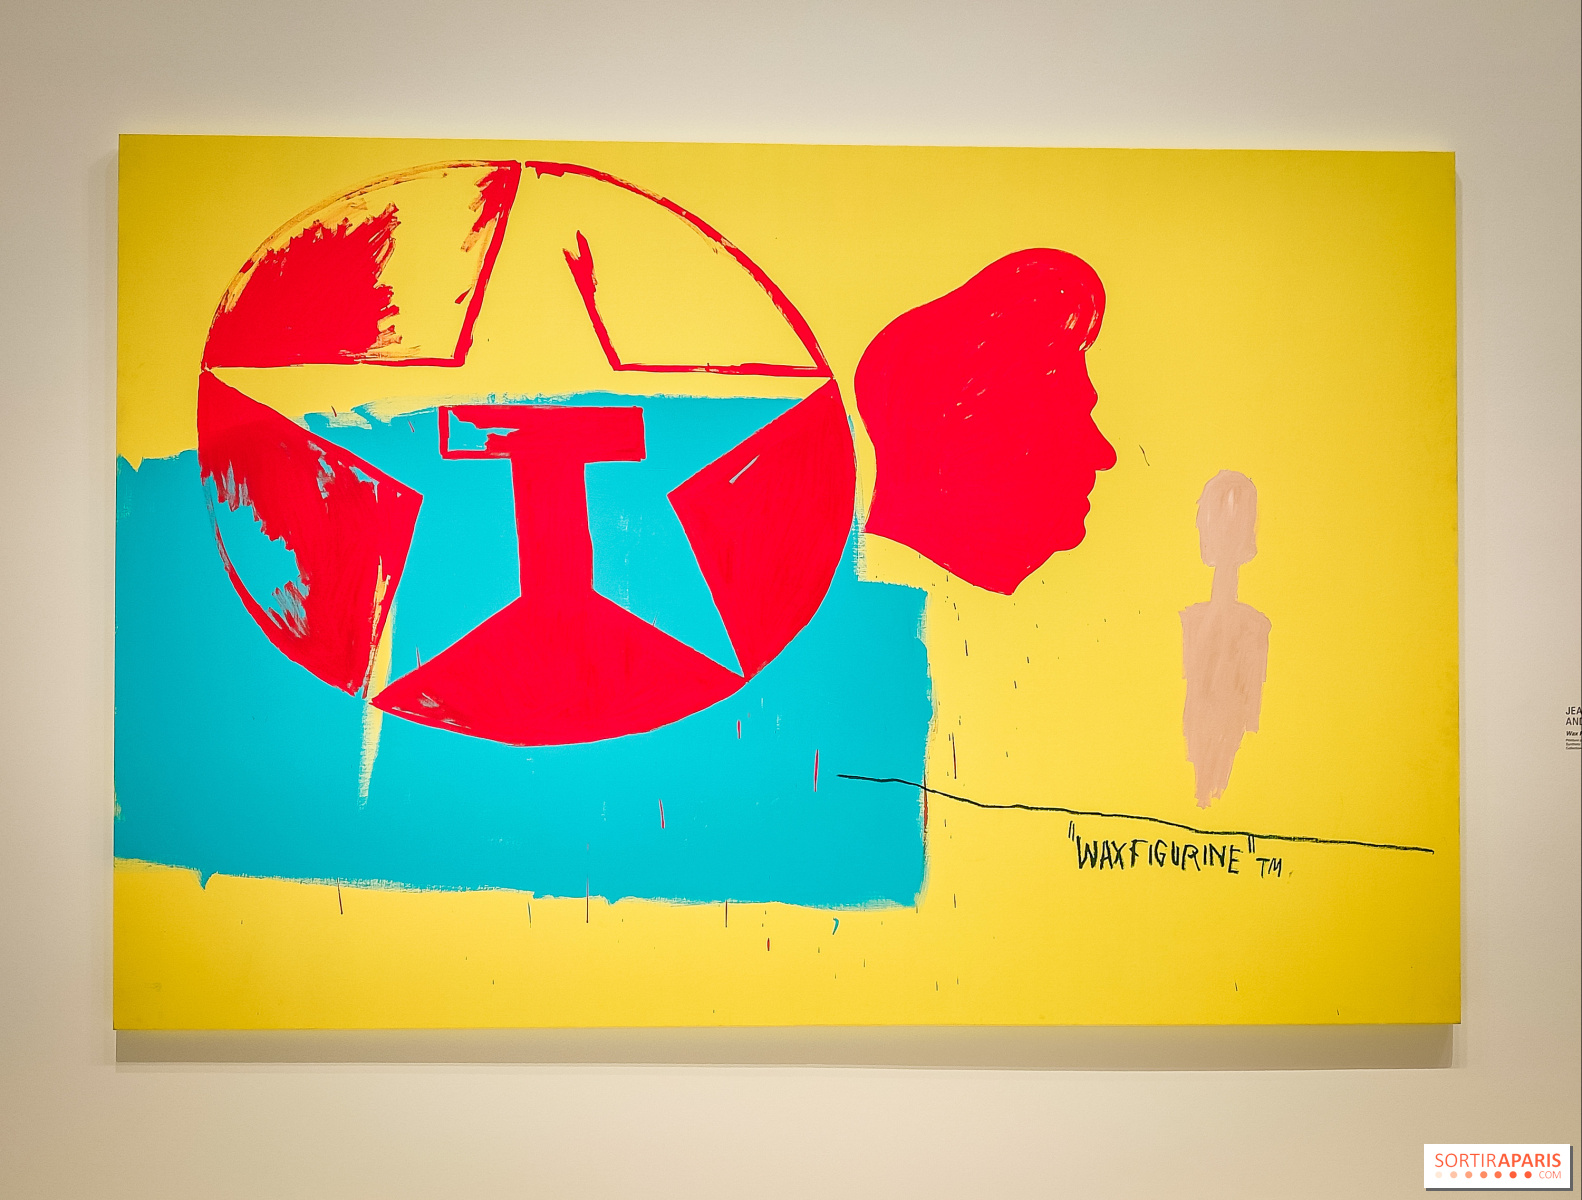 Exposition : Warhol et Basquiat main dans la main à la Fondation Louis- Vuitton - Le Parisien